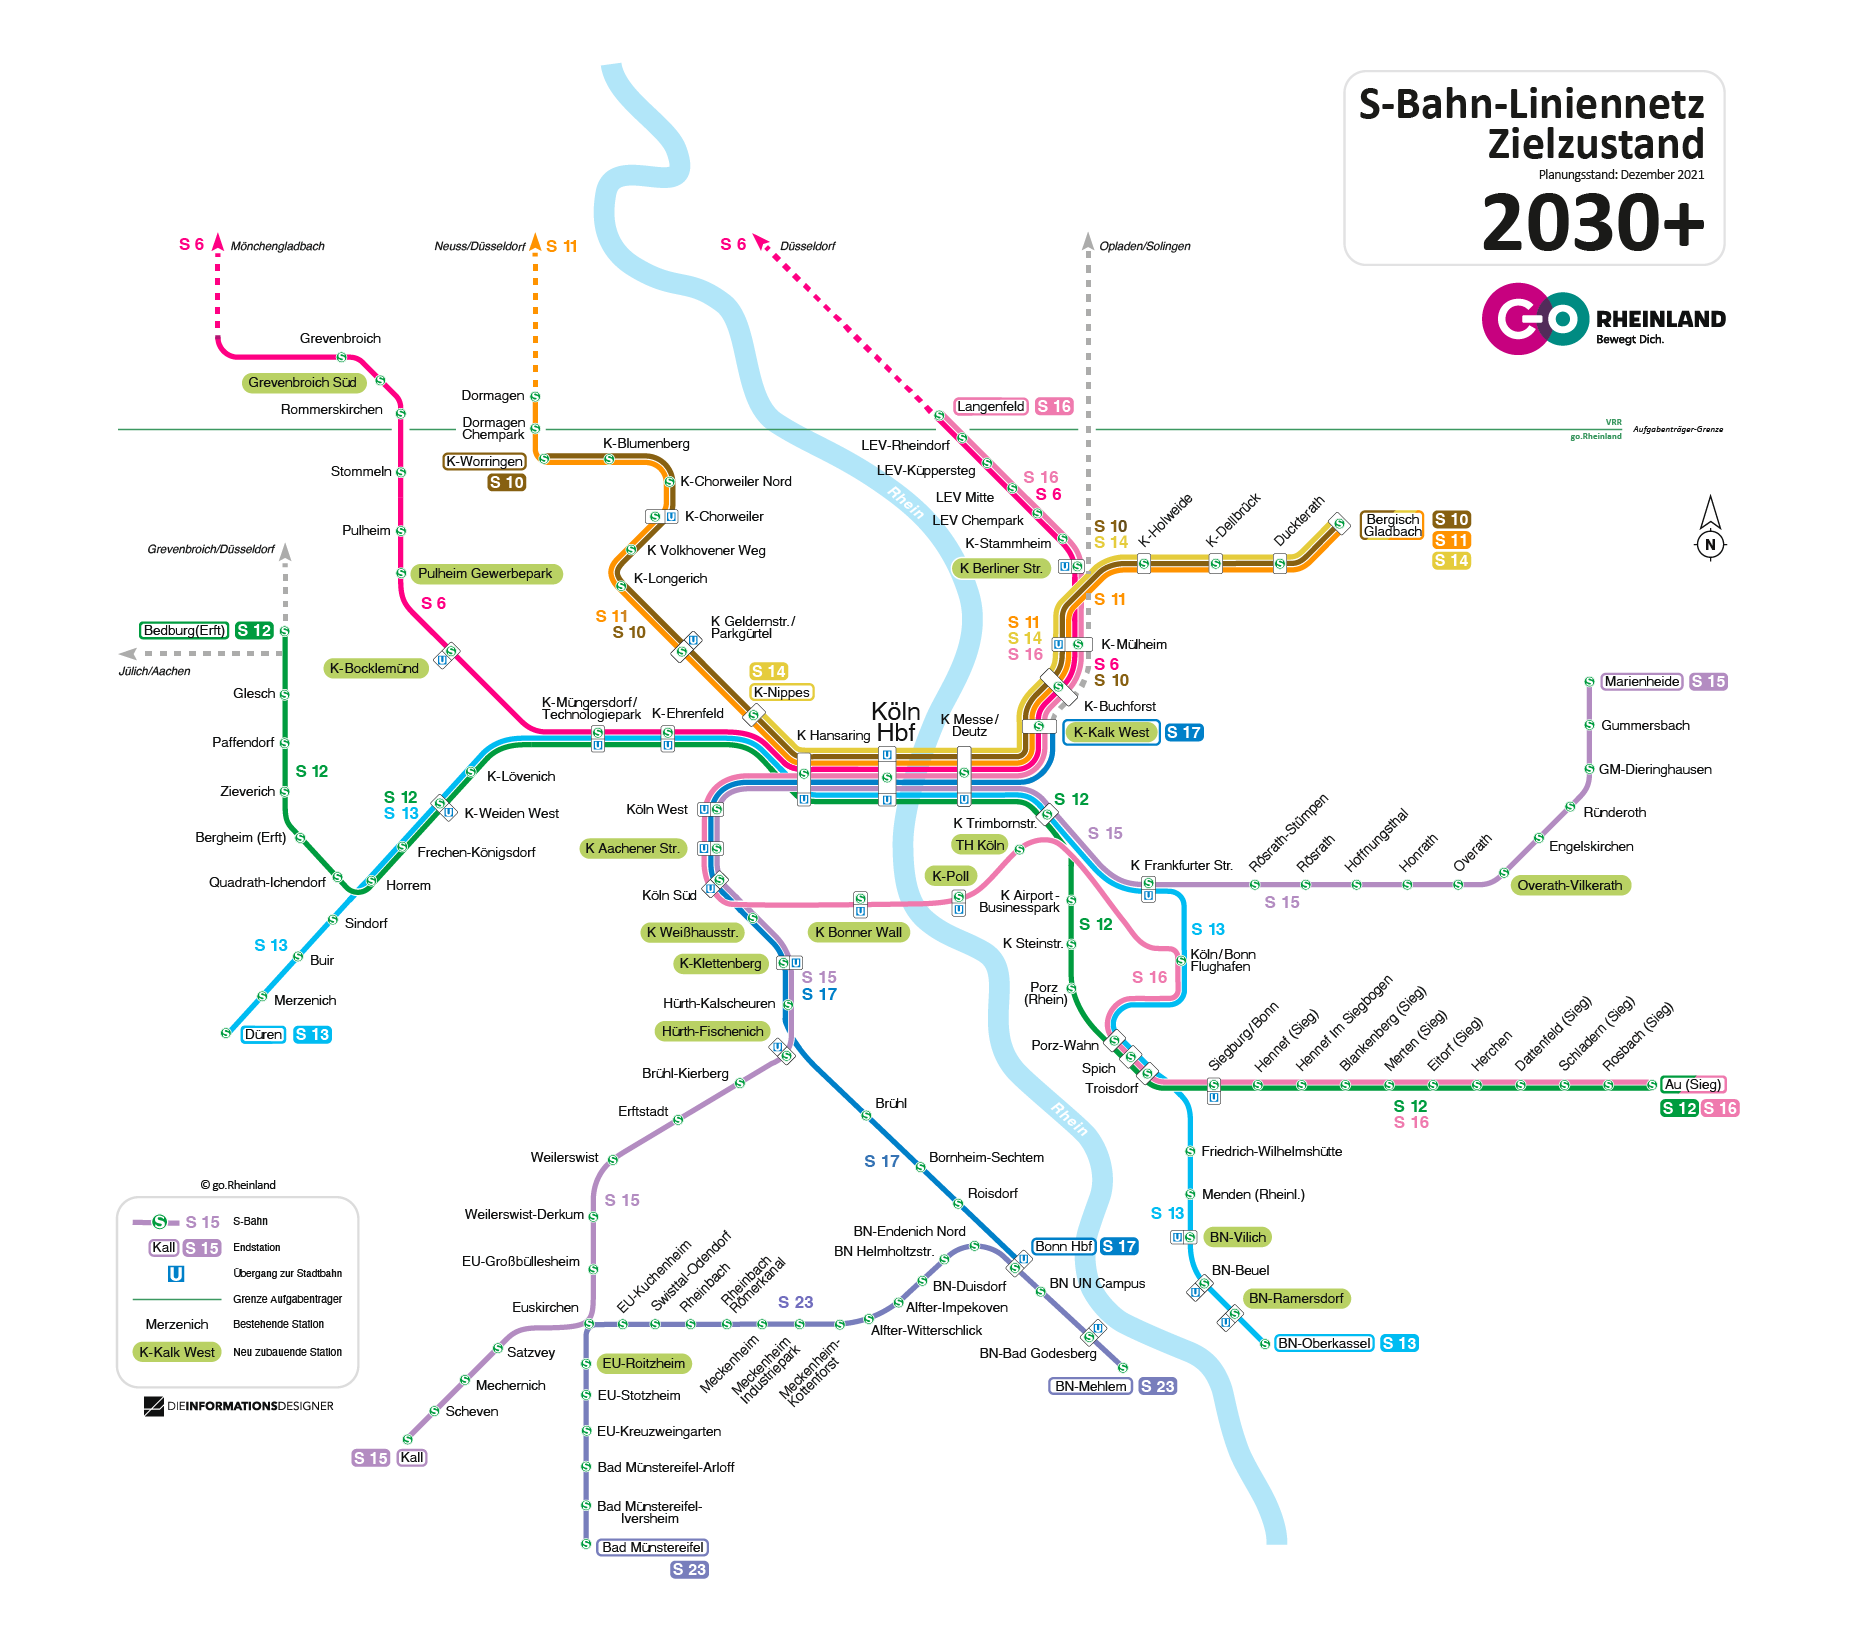 Die S 13 wird bis nach Bonn-Oberkassel verlängert - S-Bahn Köln